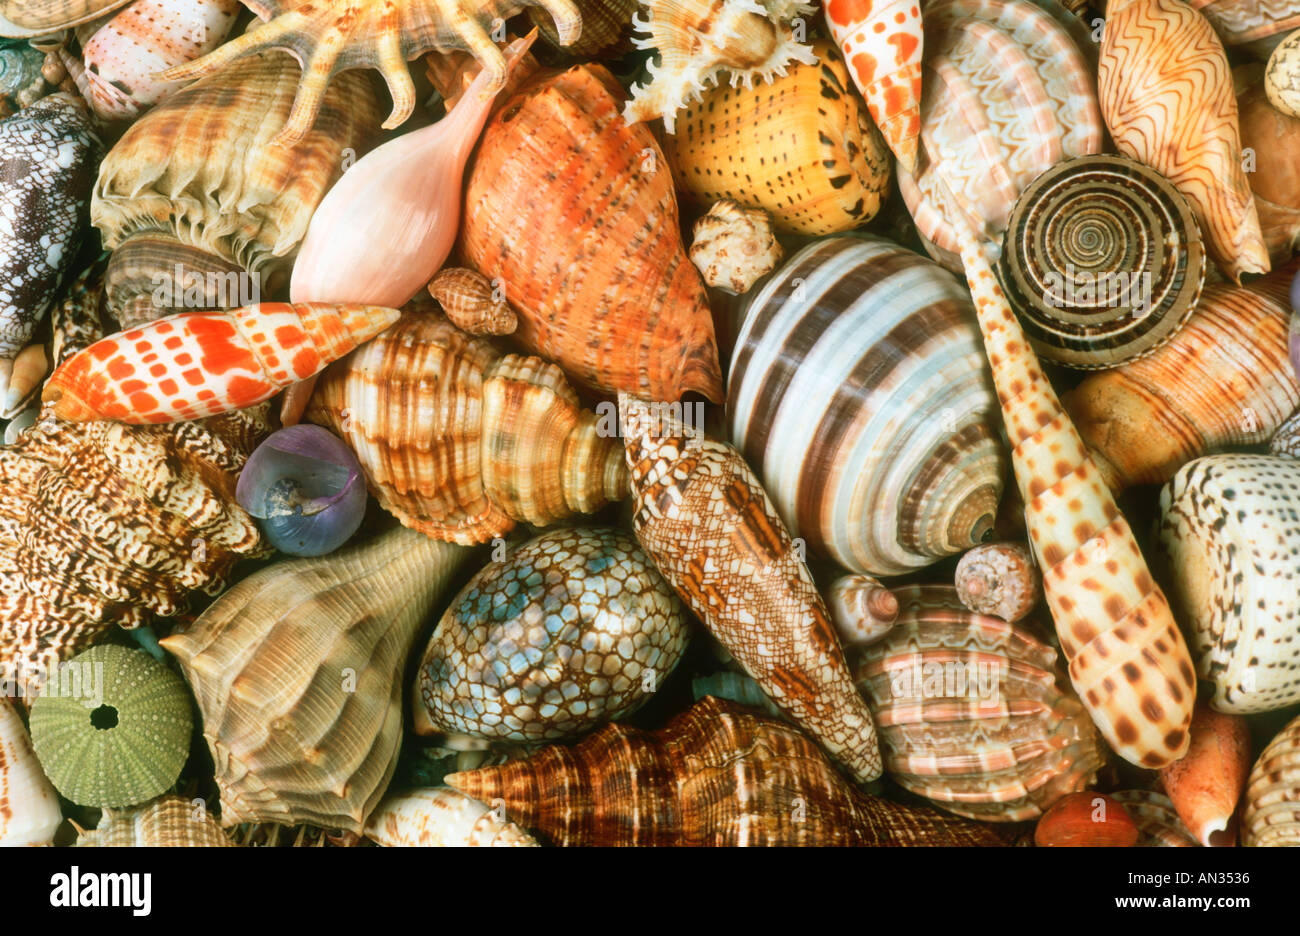 Muscheln-Schalen von Meeresschnecken aus rund um die afrikanische Küste eine Illustration der biologischen Vielfalt Stockfoto